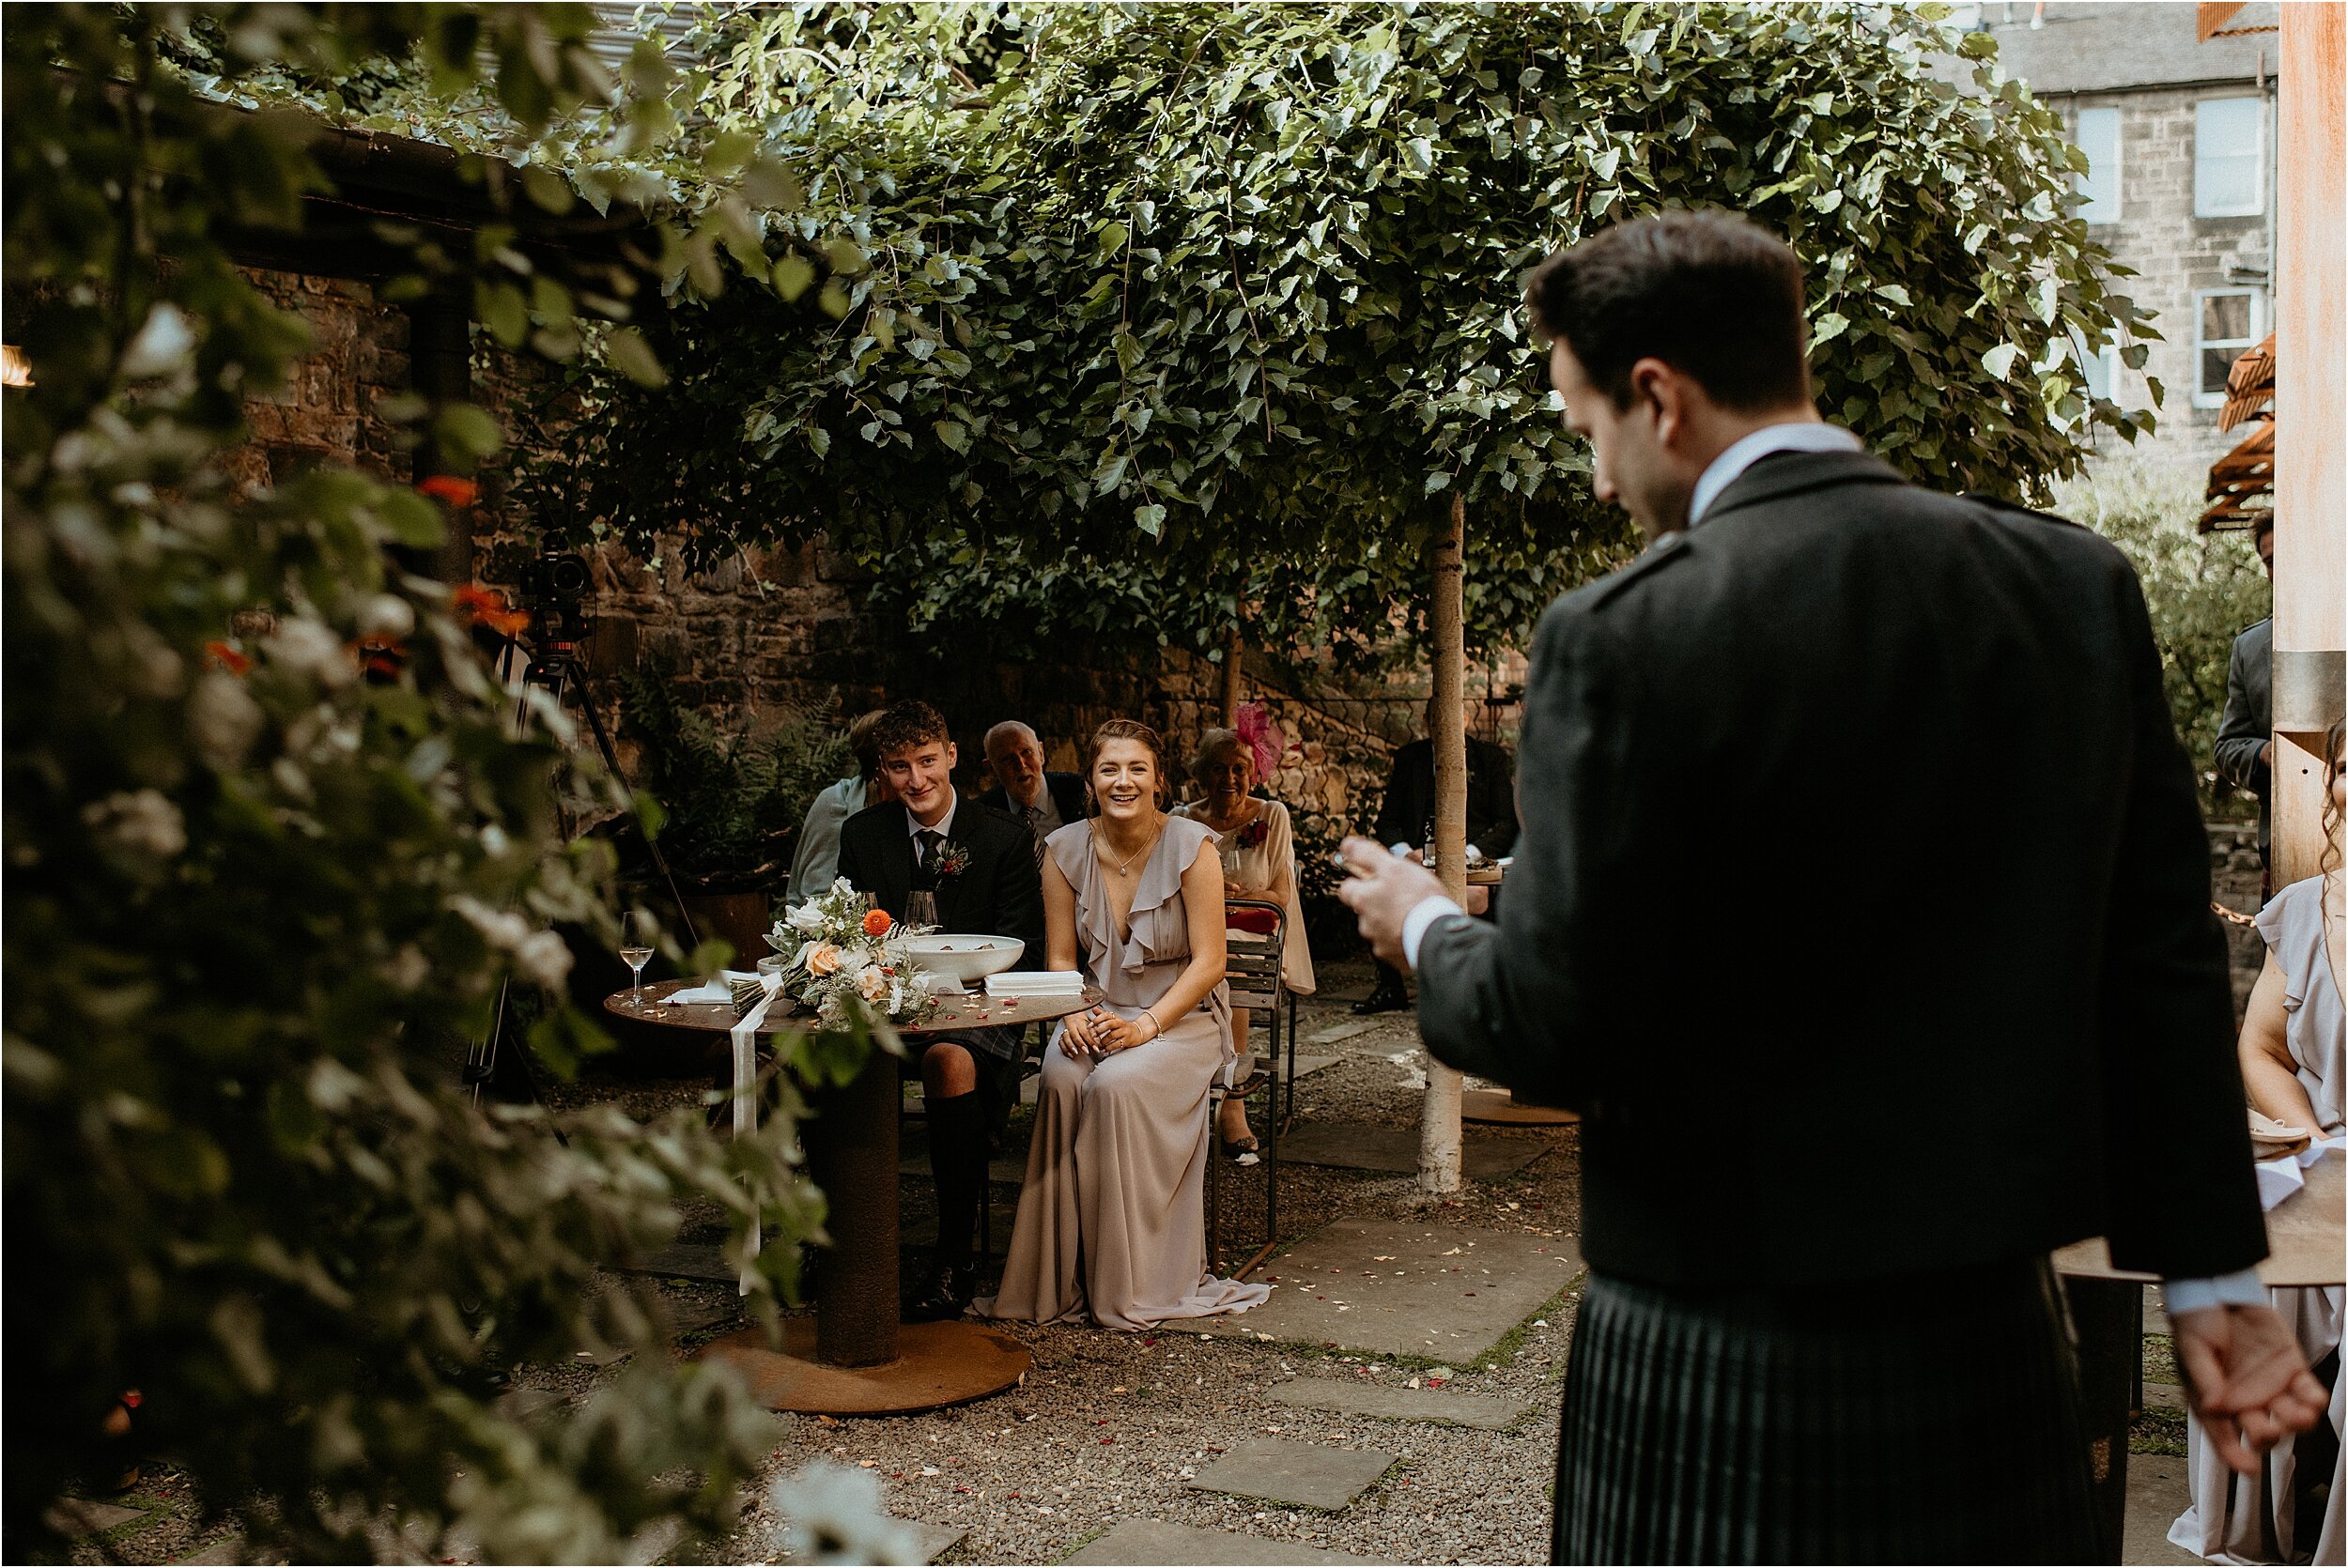 Timberyard-wedding-Edinburgh-43.jpg